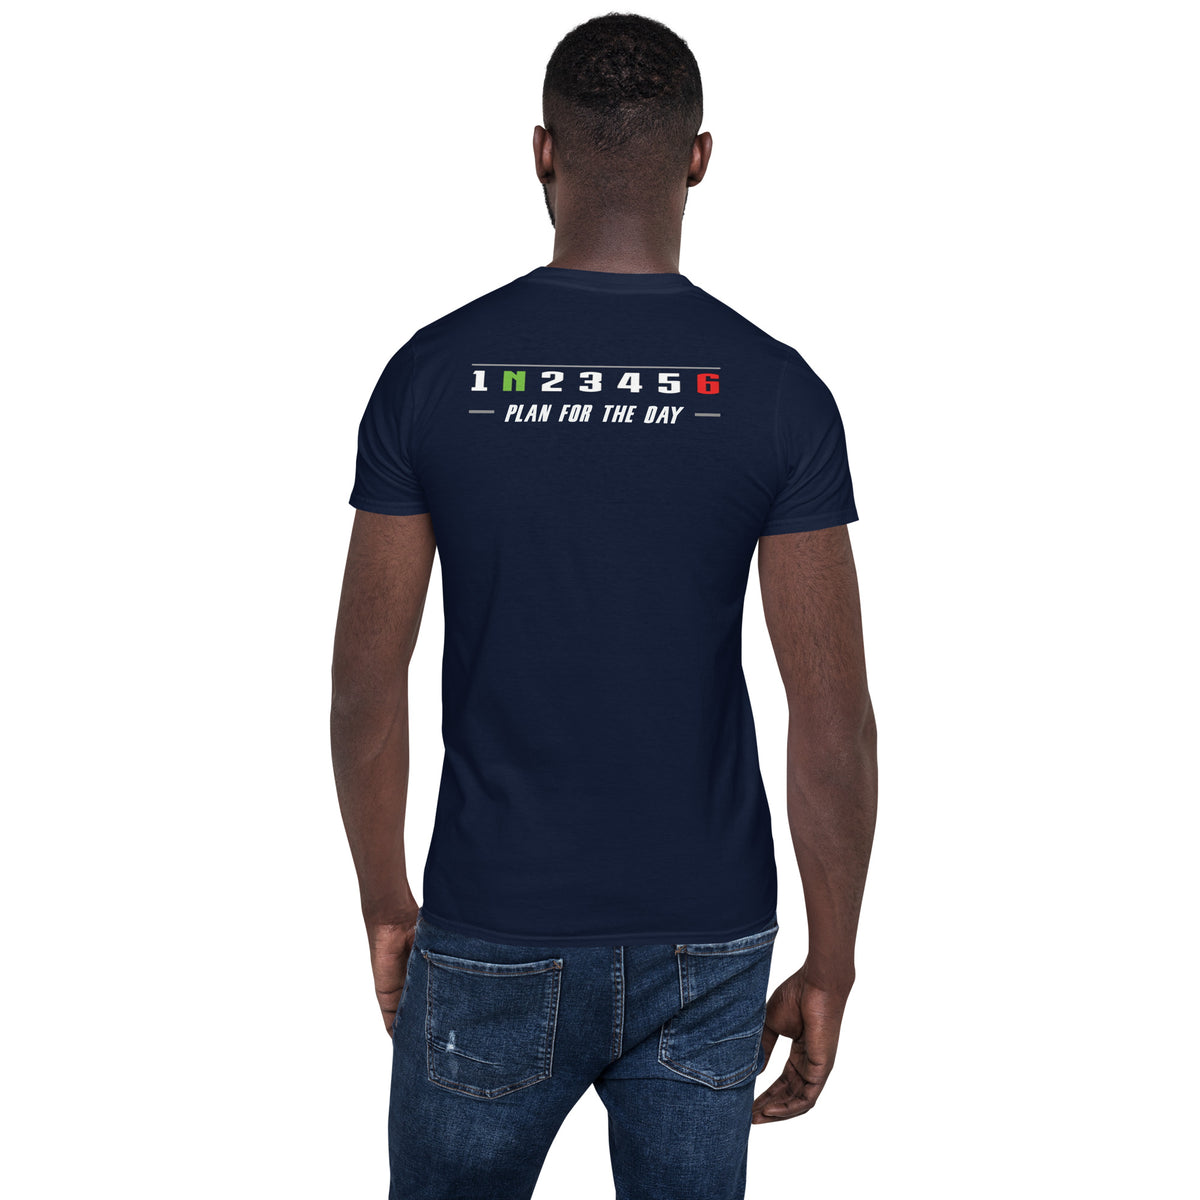 Herren T-Shirt "Plan for today" Variante 5